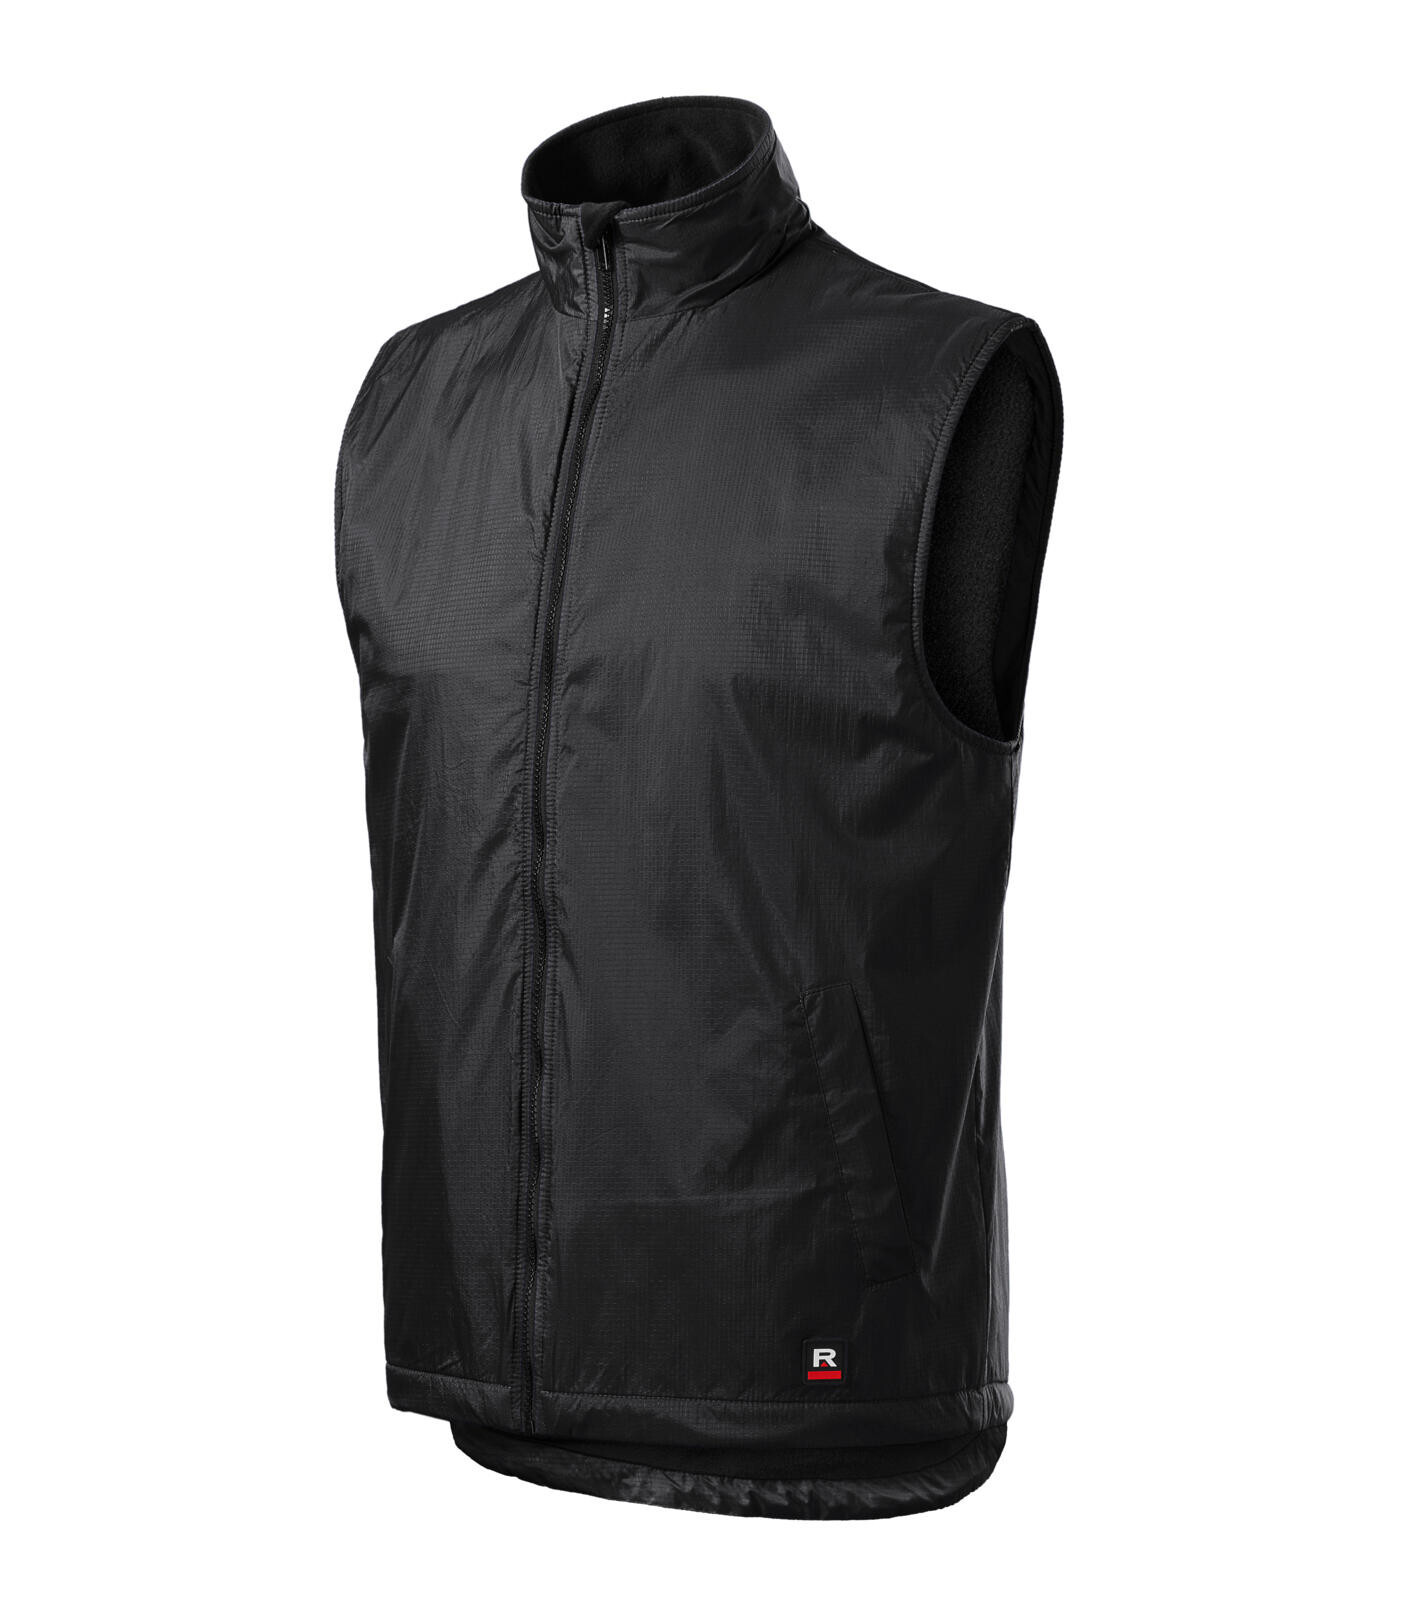 Unisex zateplená vesta Rimeck Body Warmer 509 - veľkosť: 4XL, farba: ebony grey